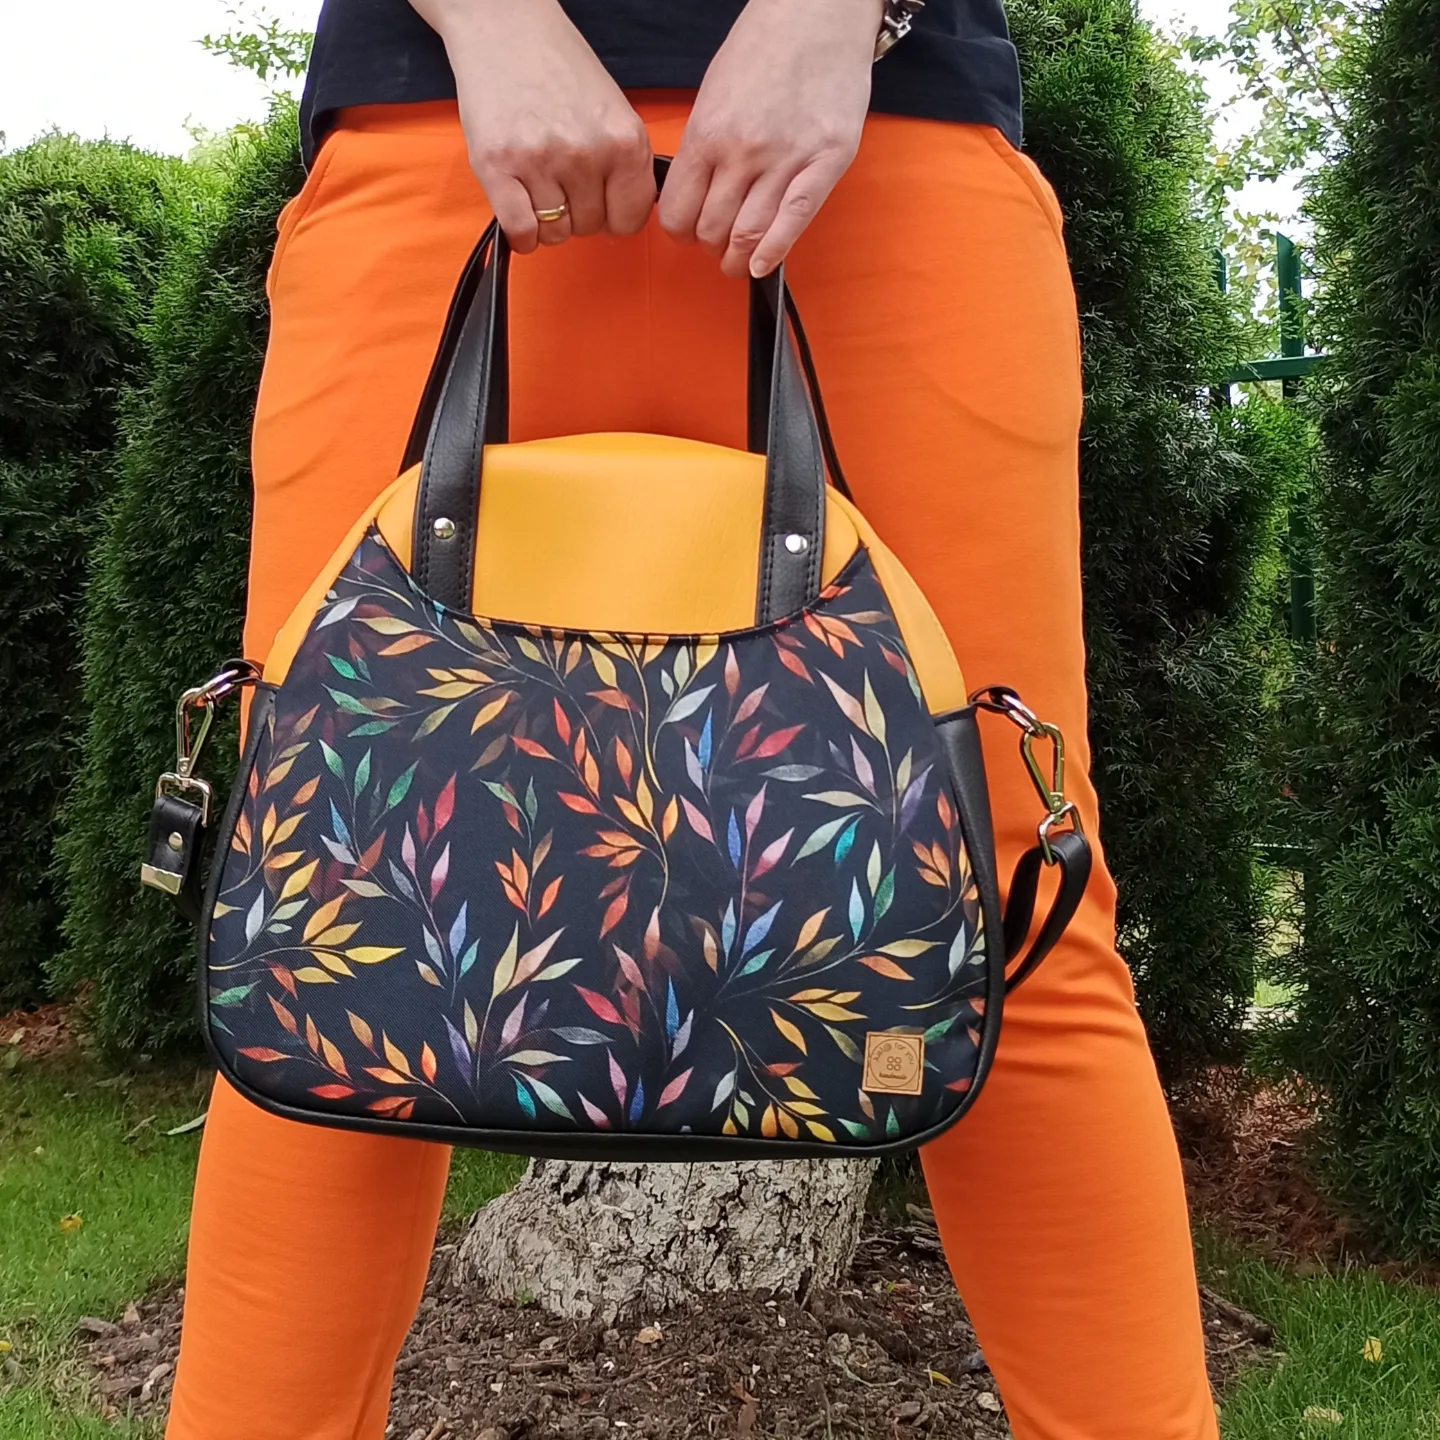 Torba damska z pomarańczowej ekoskóry oraz z kolorowym motywem liści.